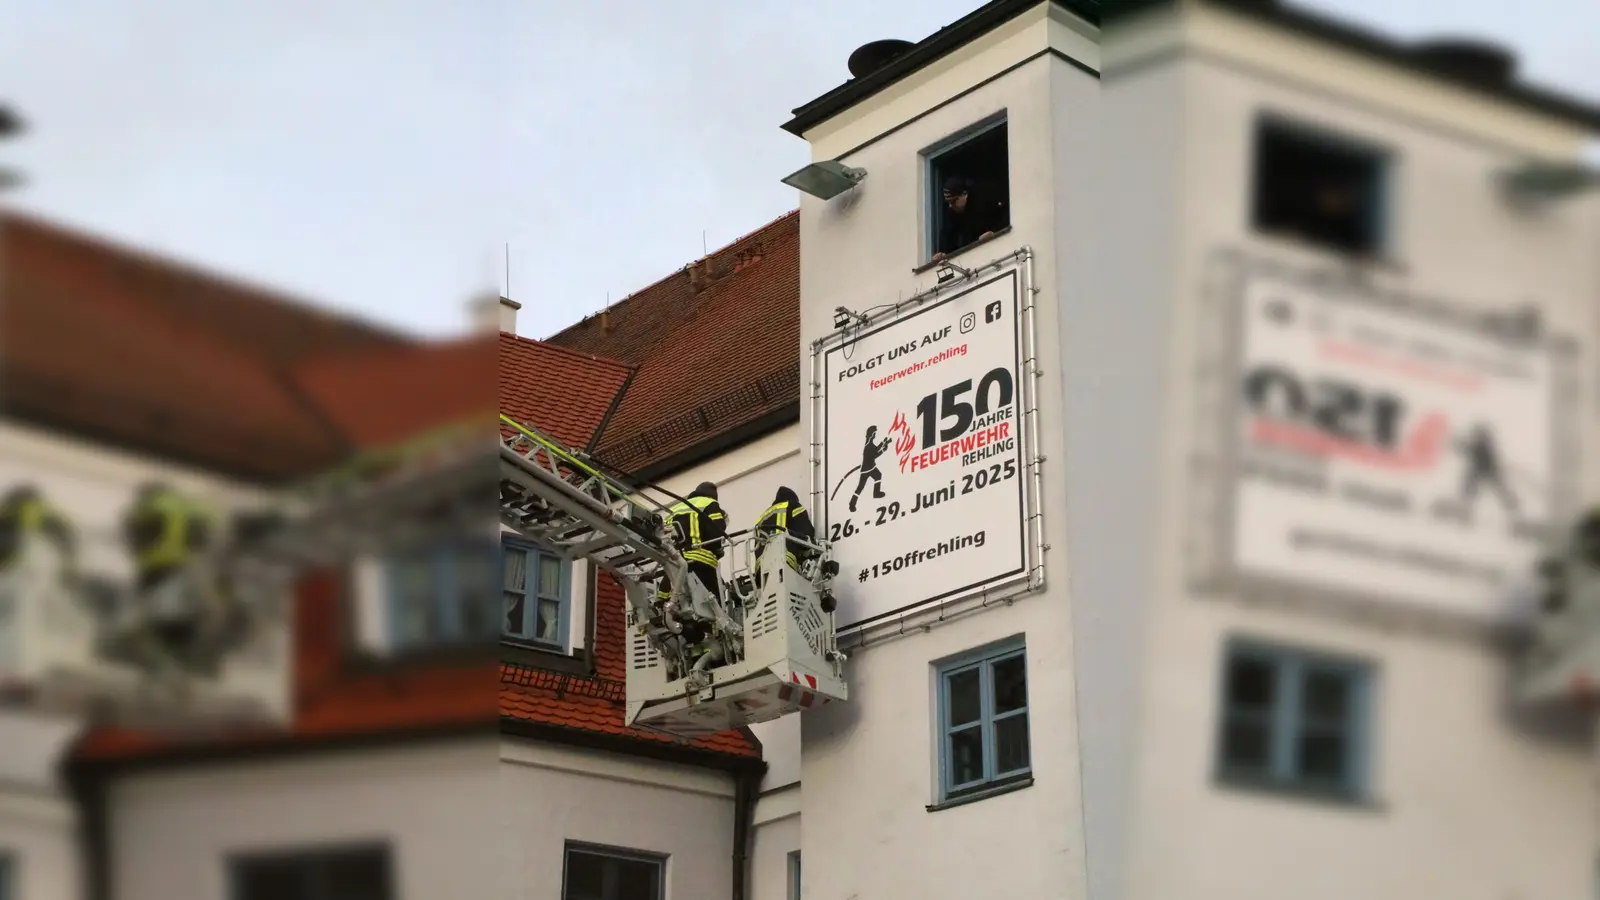 Werbeplakat der Feuerwehr Rehling für das 150-jährige Jubiläumsfest im kommenden Jahr (Foto: Josef Abt )